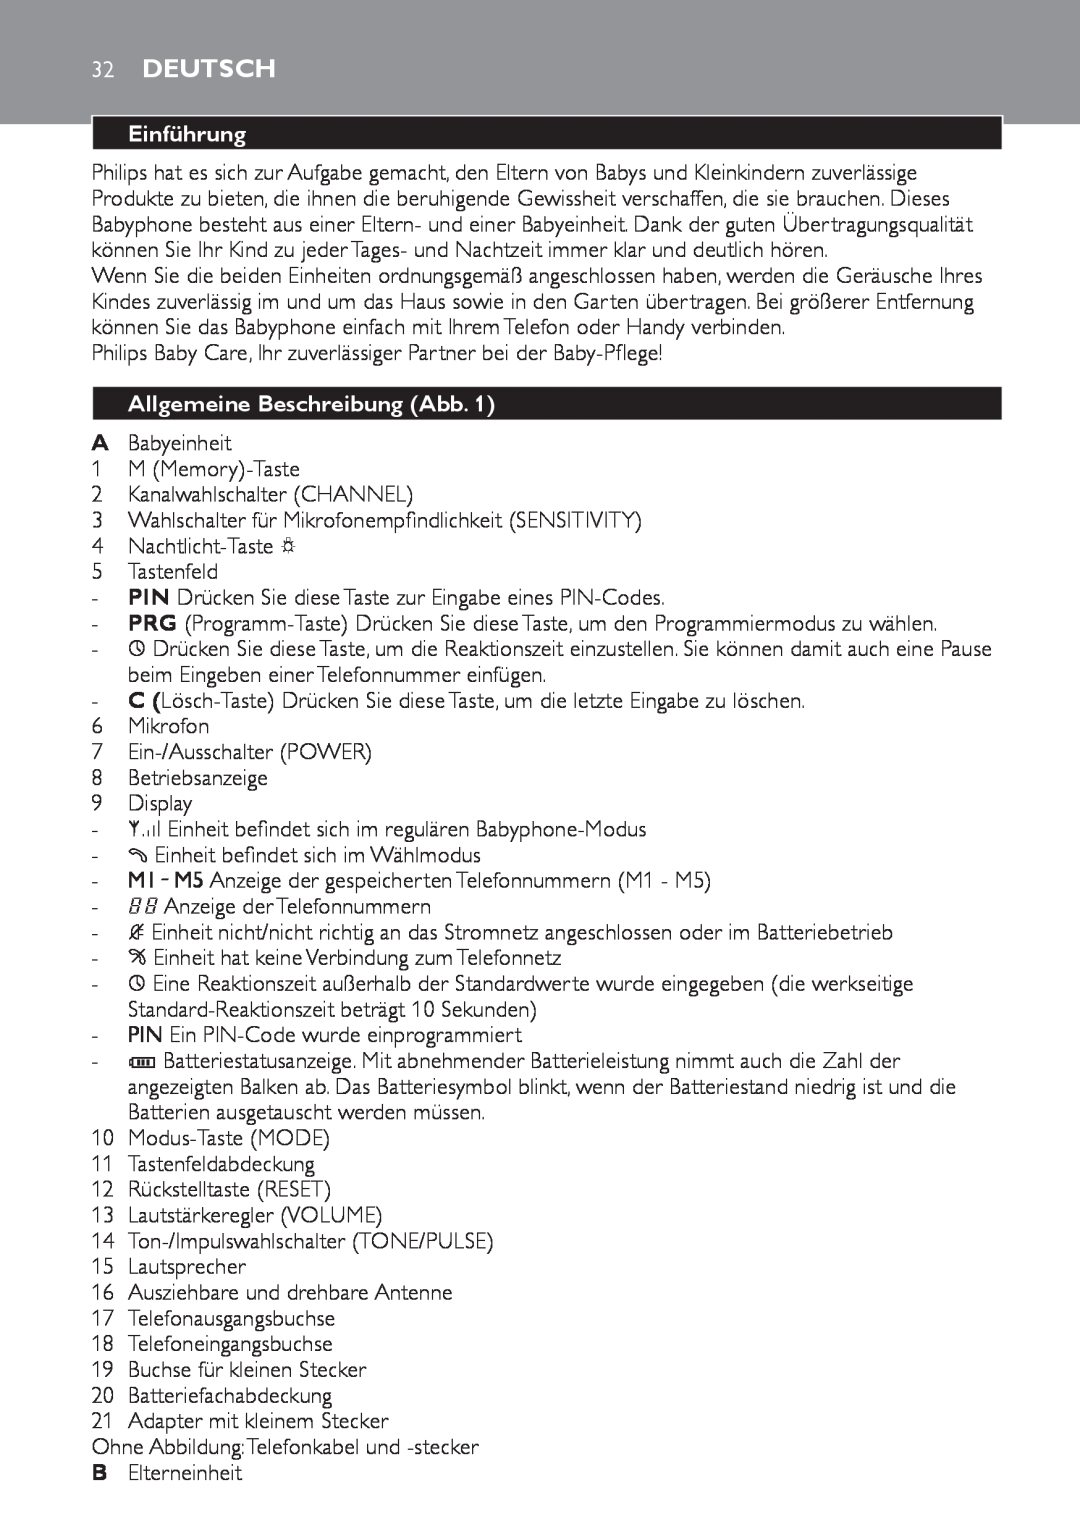 Philips SCD 469 manual 32Deutsch, Einführung, Allgemeine Beschreibung Abb 